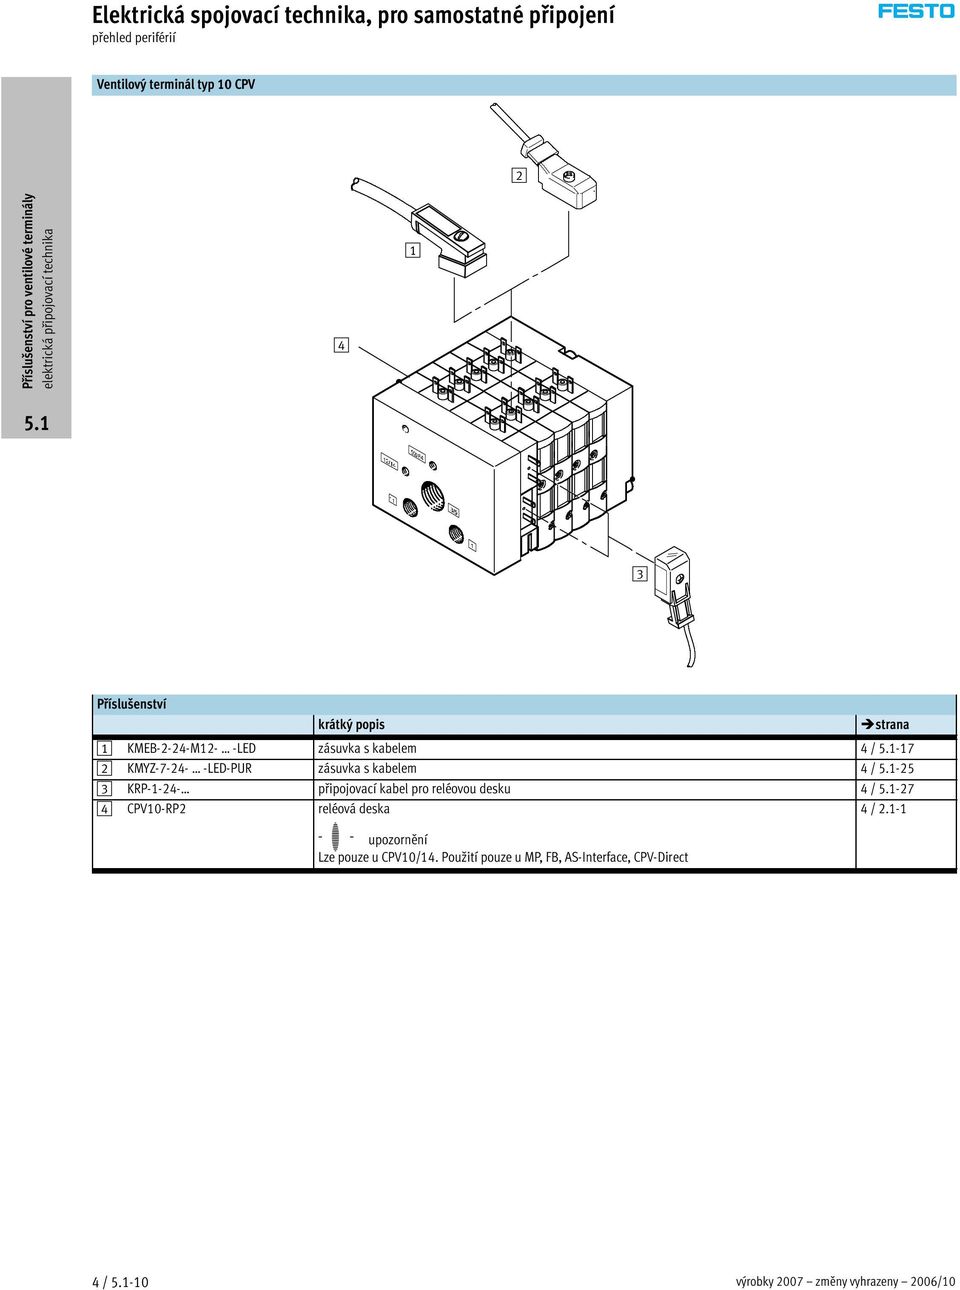 -25 3 KRP-1-24- připojovací kabel pro reléovou desku 4 / -27 4 CPV10-RP2 reléová deska -H-